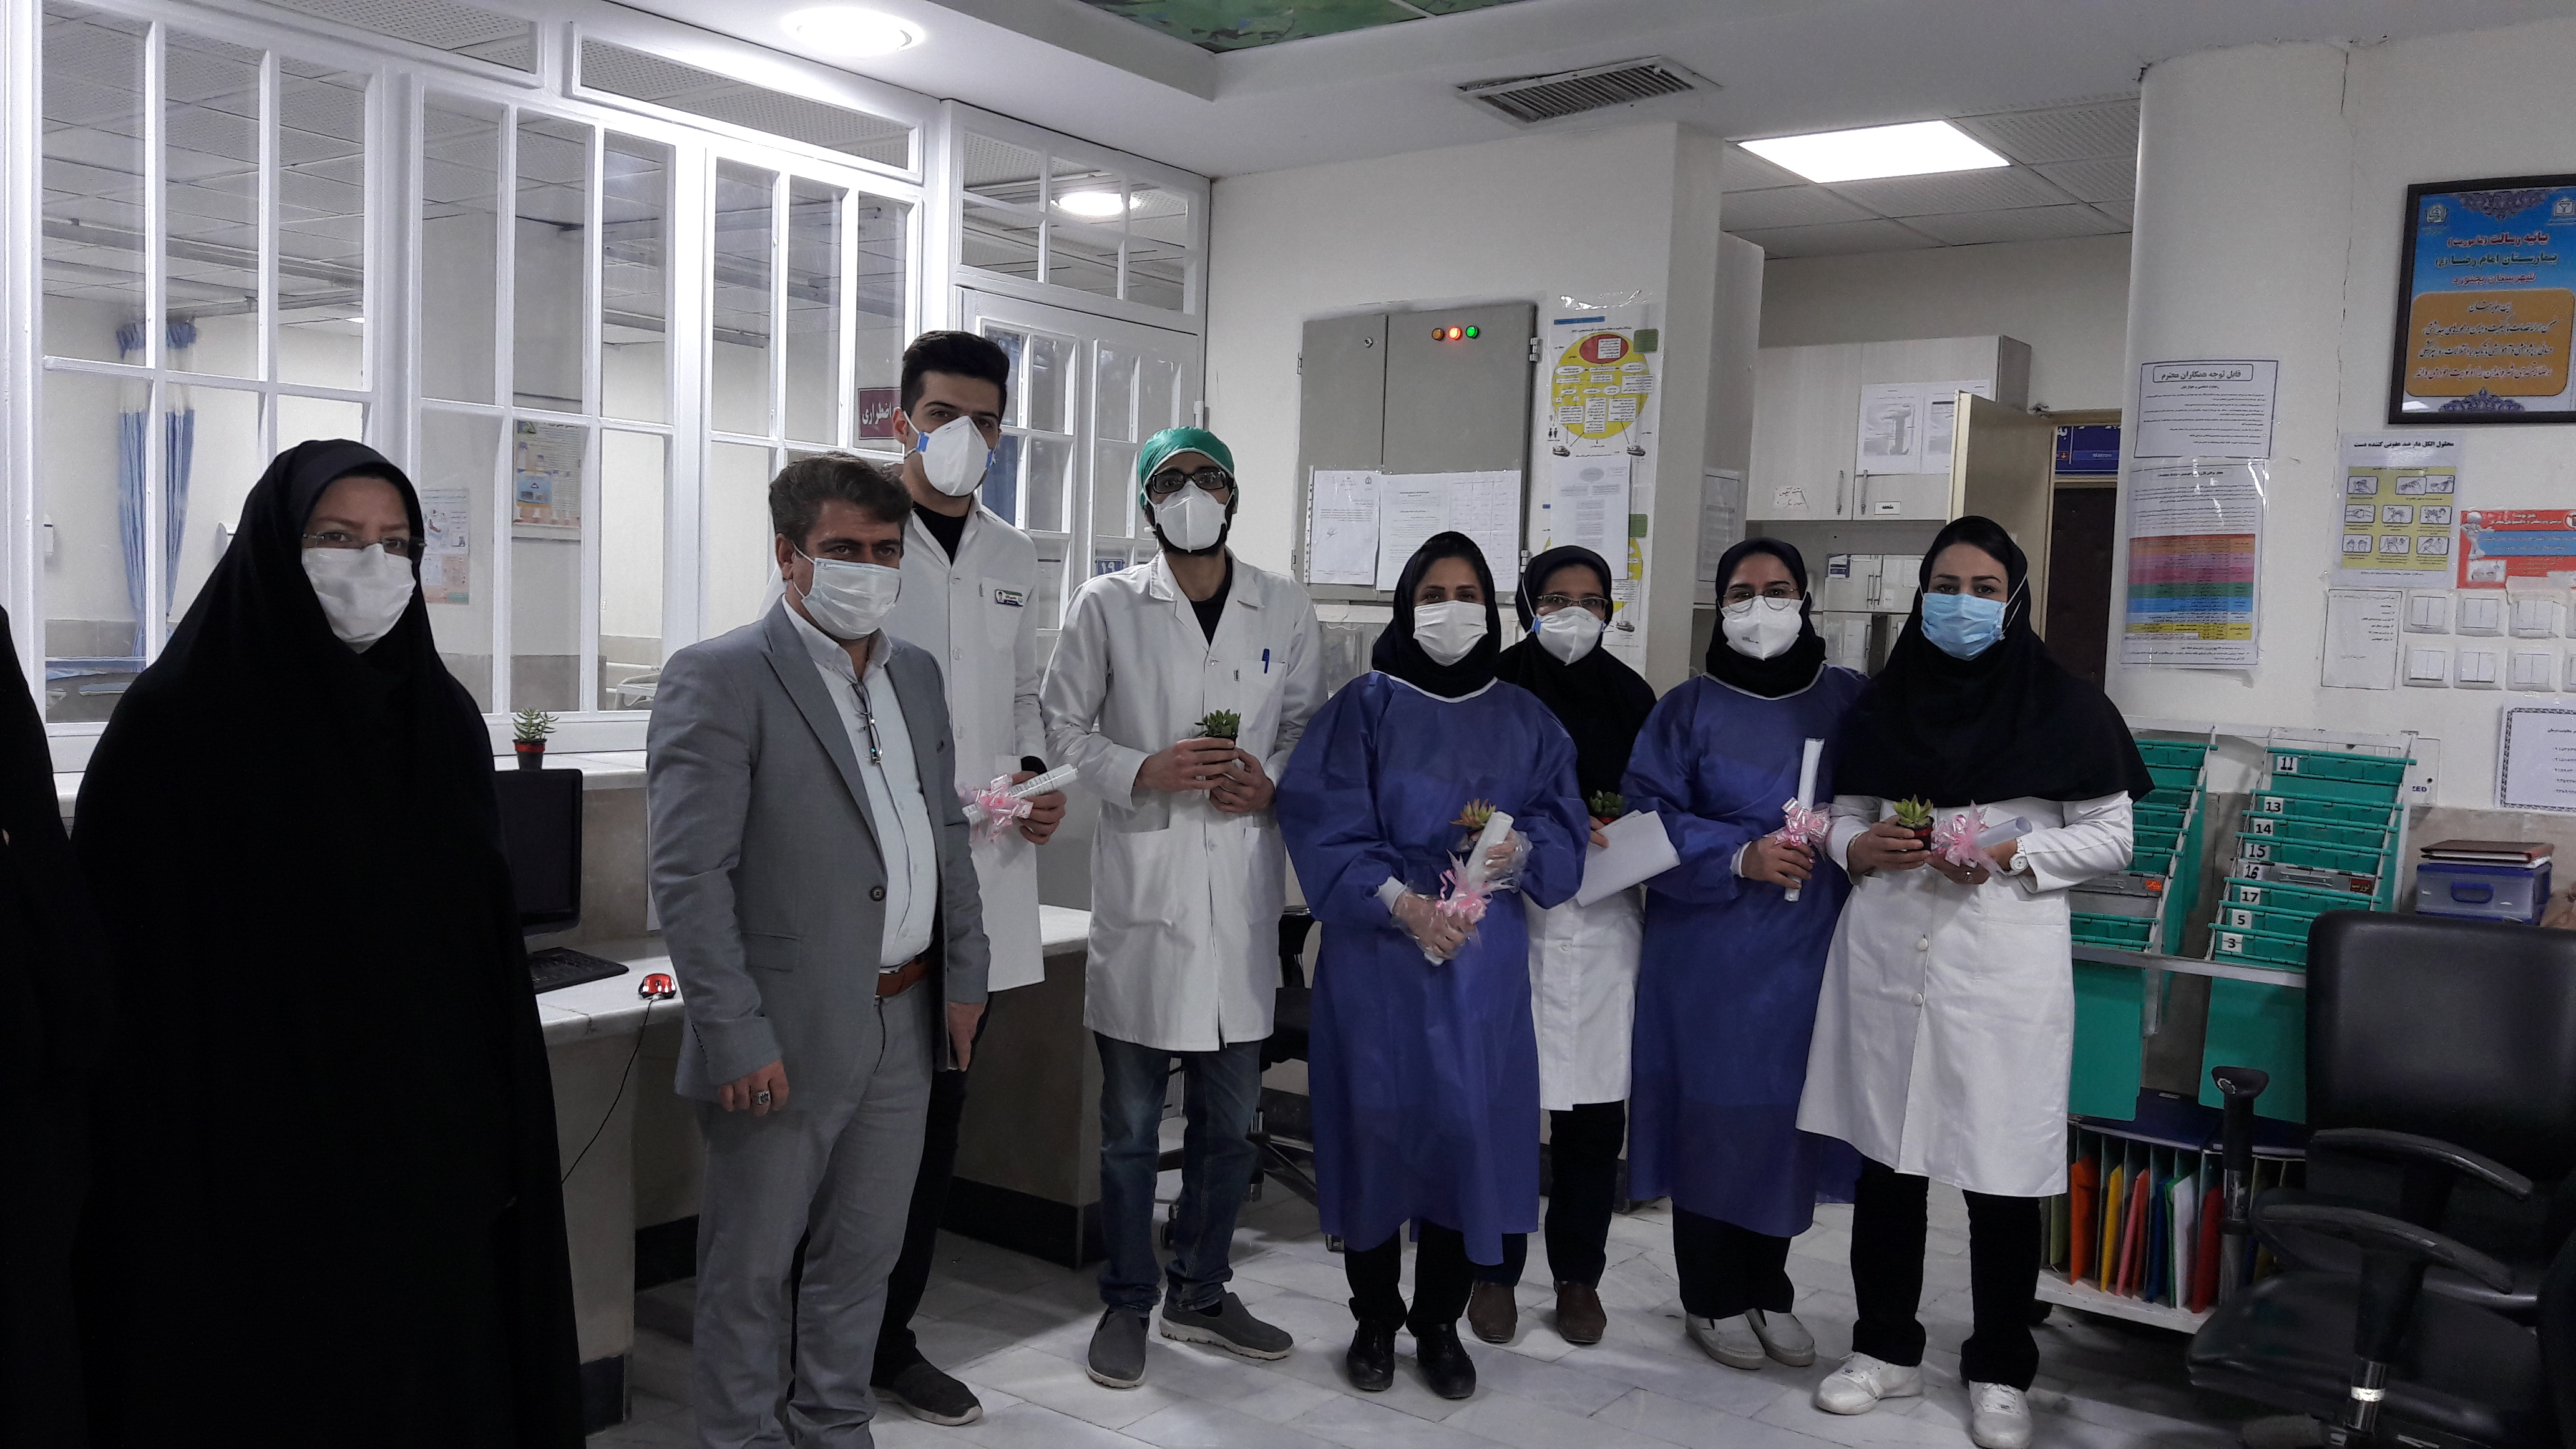 گزارش تصویری از هدایای دانش آموزان مدرسه راهیان کوثر بمناسبت روز پرستار از بیمارستان امام رضا (ع)